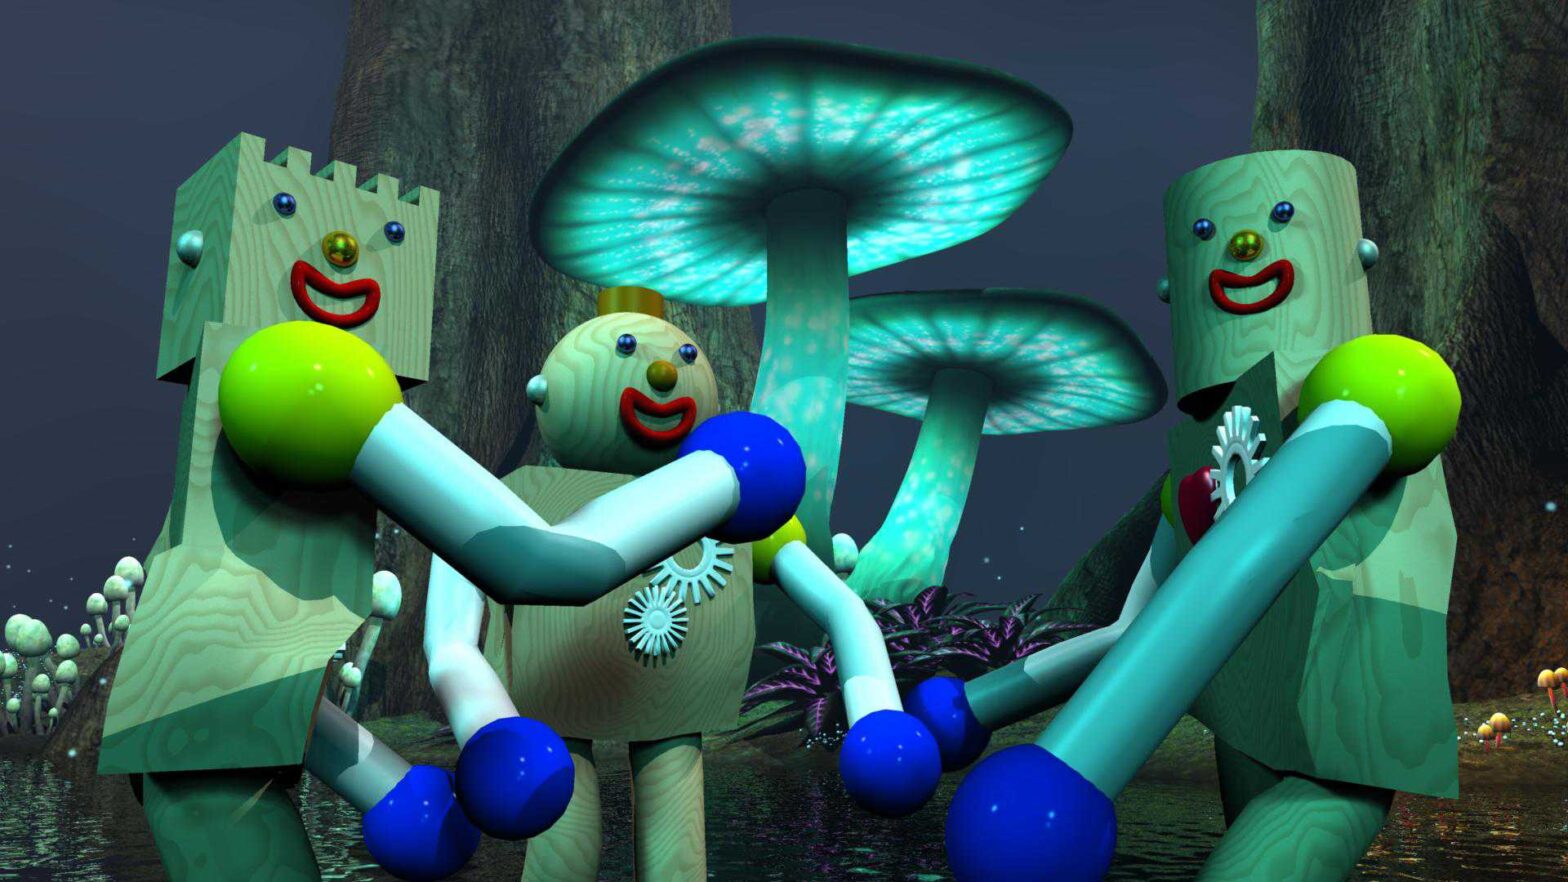 Gurlz Robots in Mushroom Land